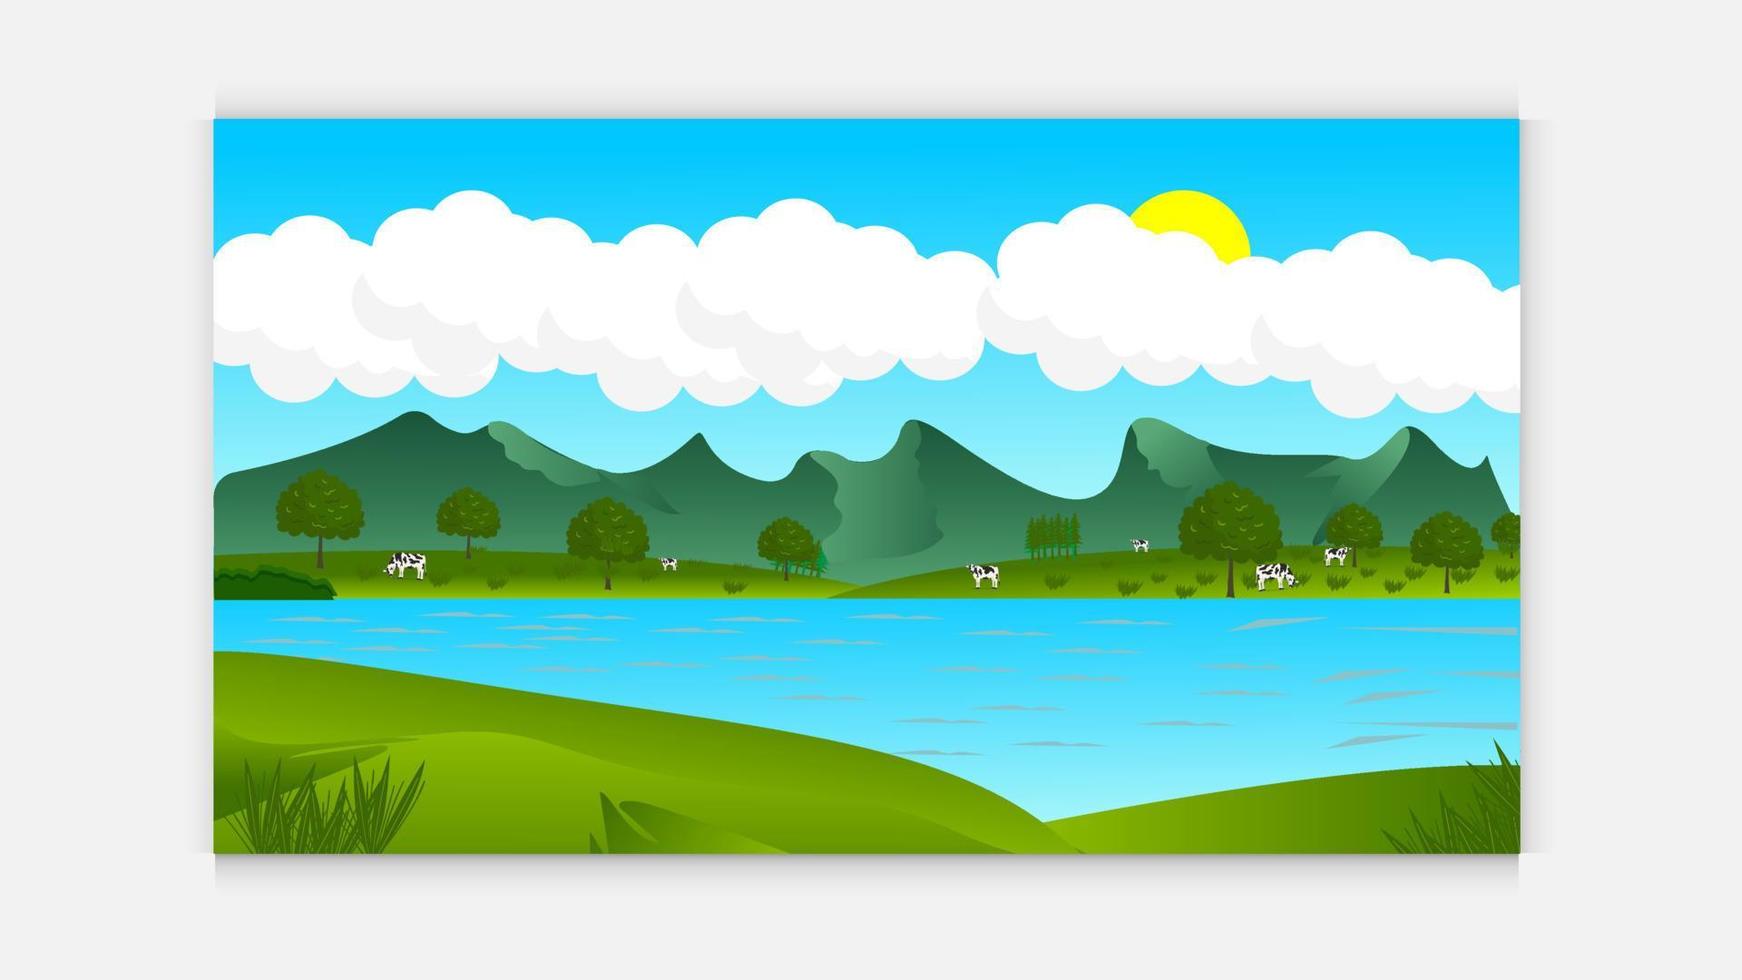 grön landskap med ängar, bergen och ko . sjö och skog, natur landskap, vektor bakgrund. vektor illustration i platt design.